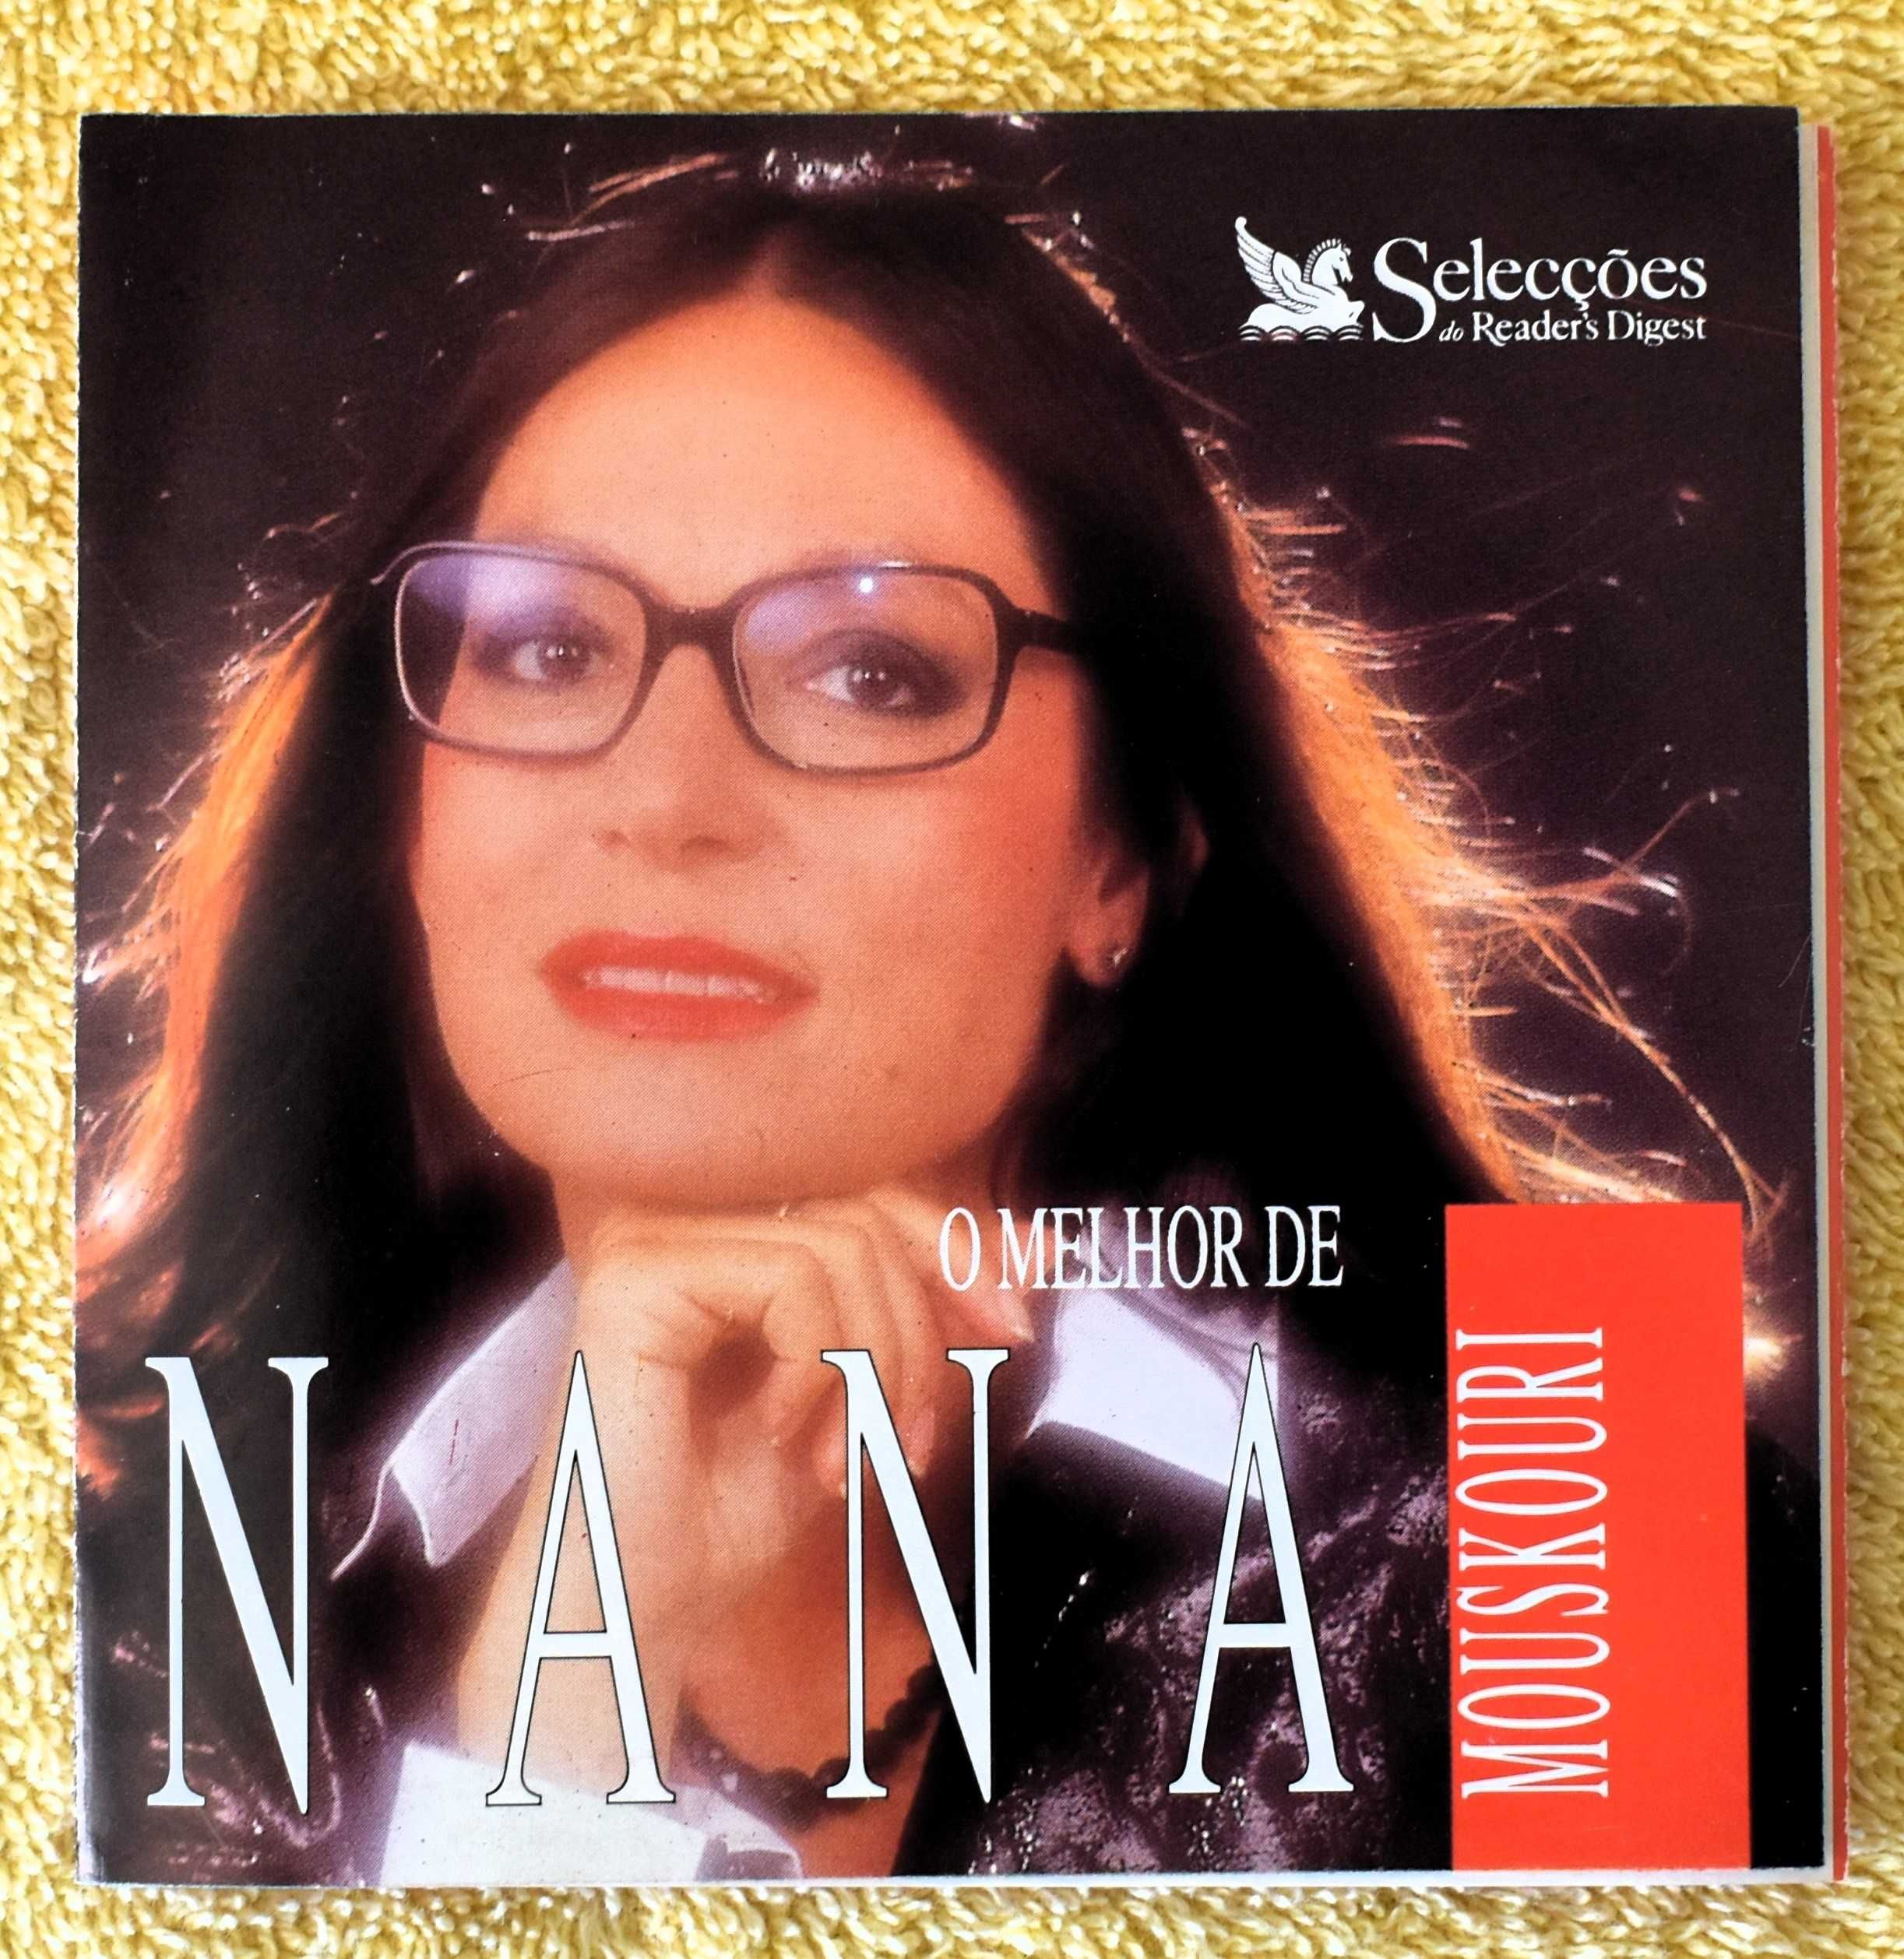 Nana Mouskouri - O Melhor de Nana Mouskouri - 2 discos